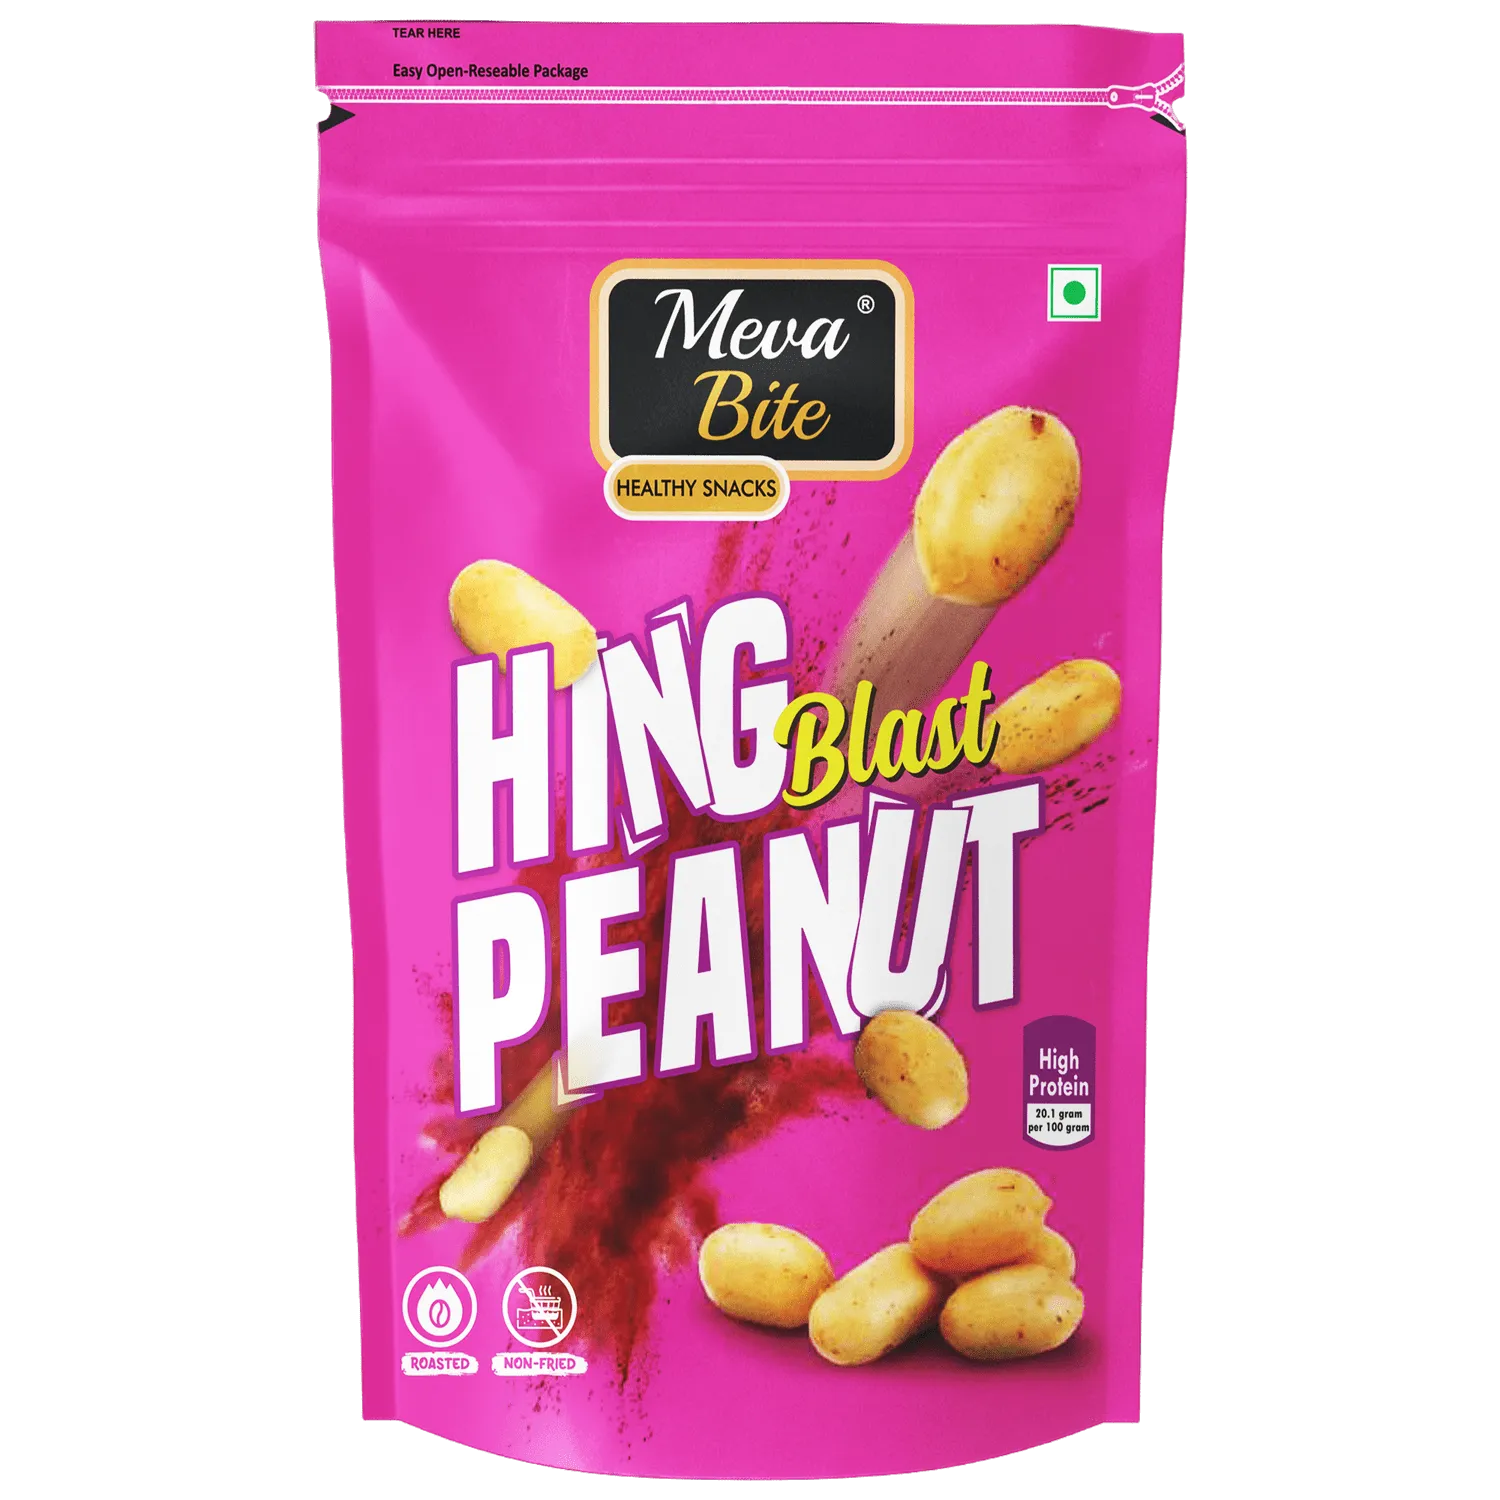 Hing Blast Peanut, Munching Range, Snack Foods, MevaBite